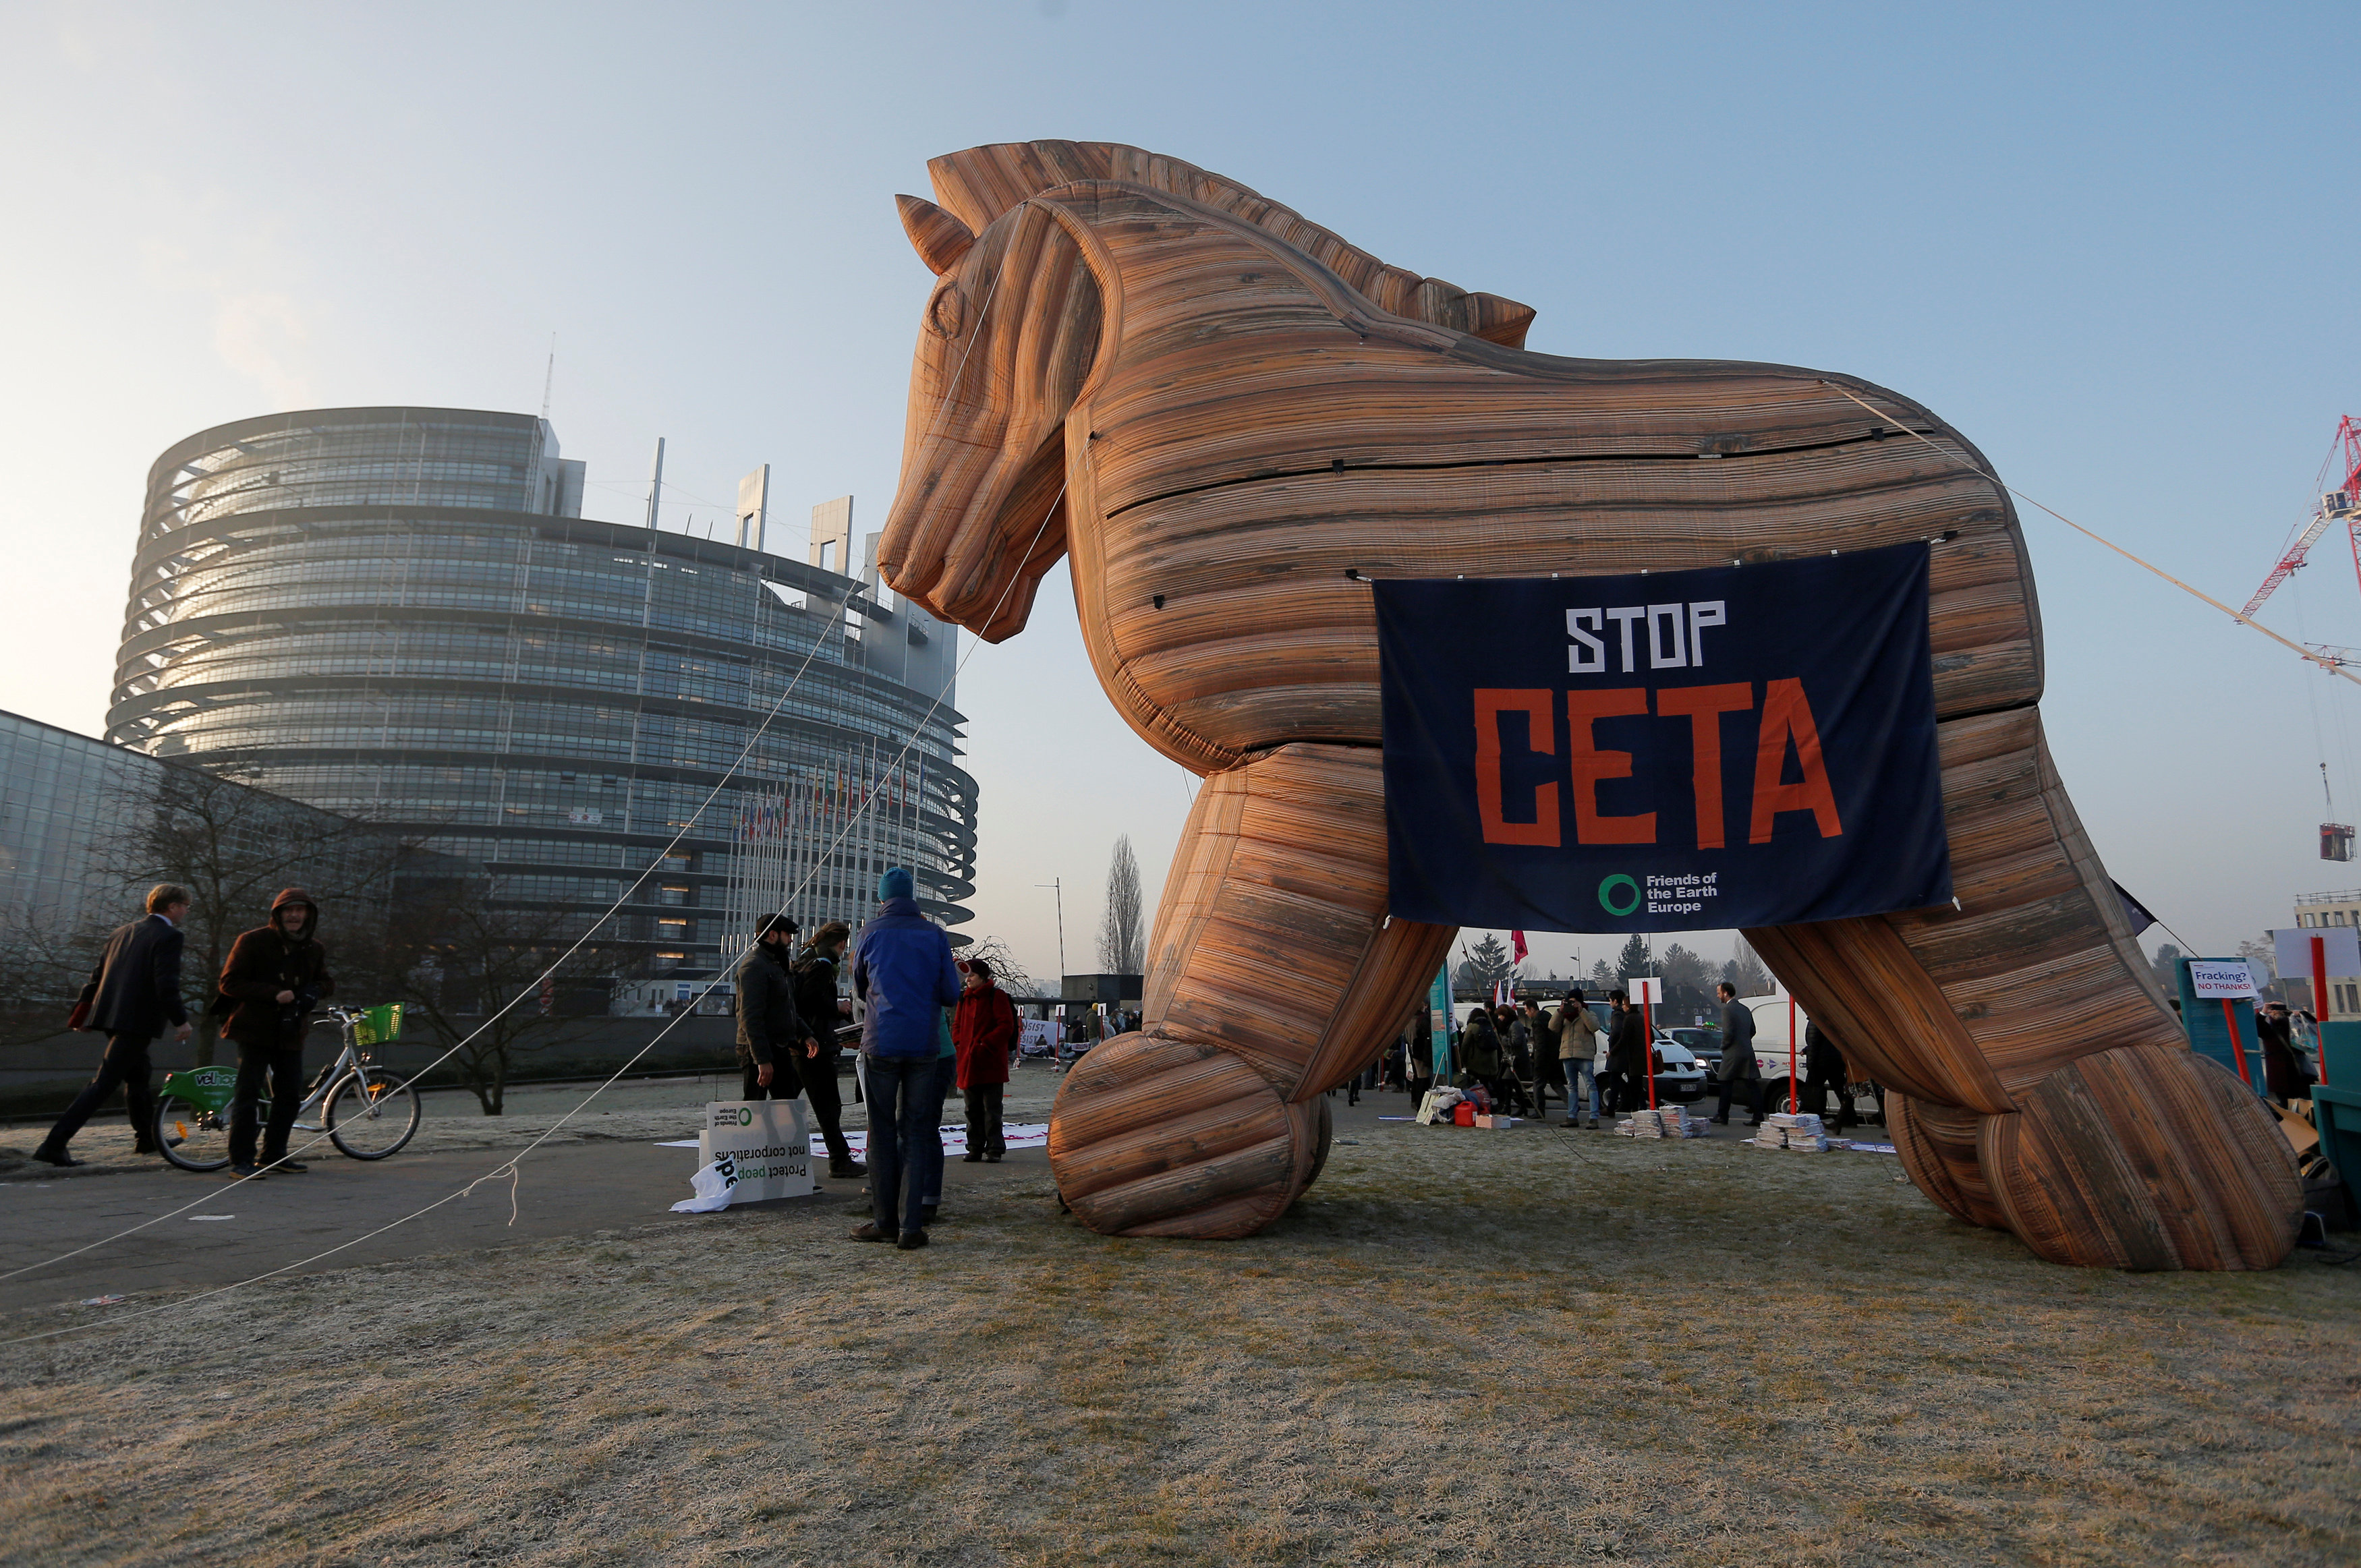 متظاهرون يستخدمون حصان طروادة فى مظاهرة ضد اتفاقية اقتصادية بين الاتحاد الأوروبى وكندا